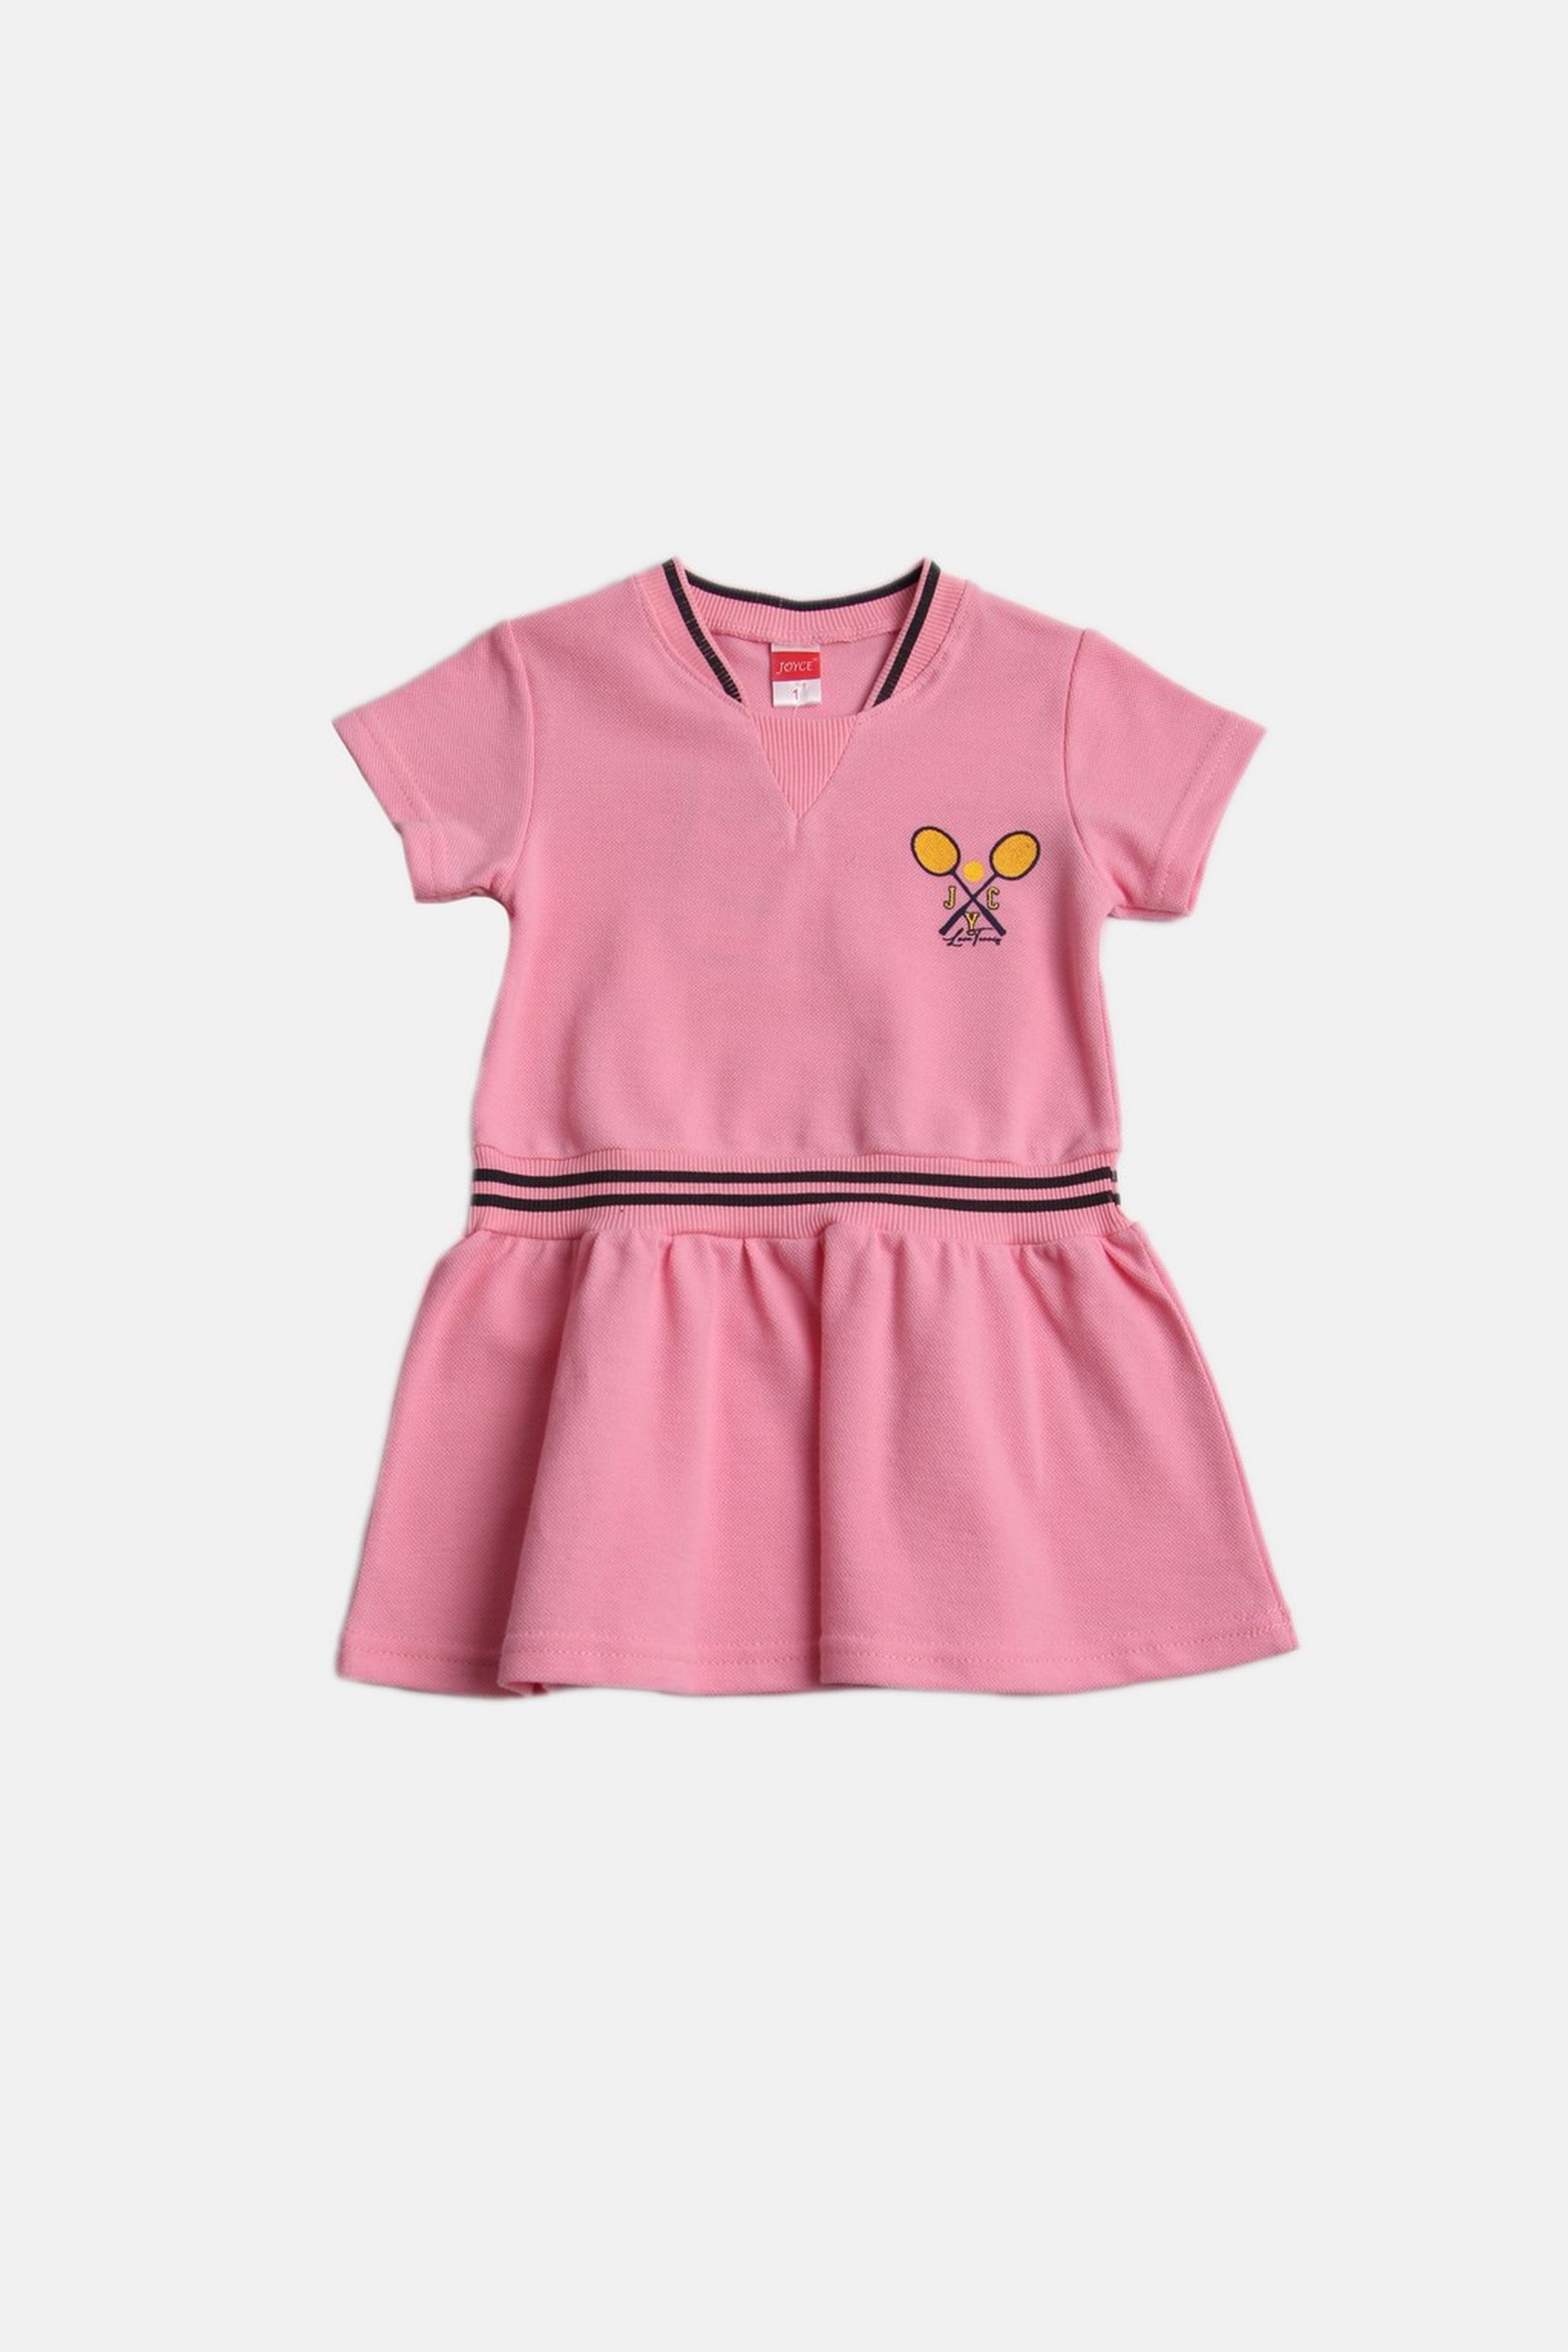 Dívčí bavlněné šaty "LOVE TENNIS"/Růžová Barva: Růžová, Velikost: vel. 2 (86/92 cm)